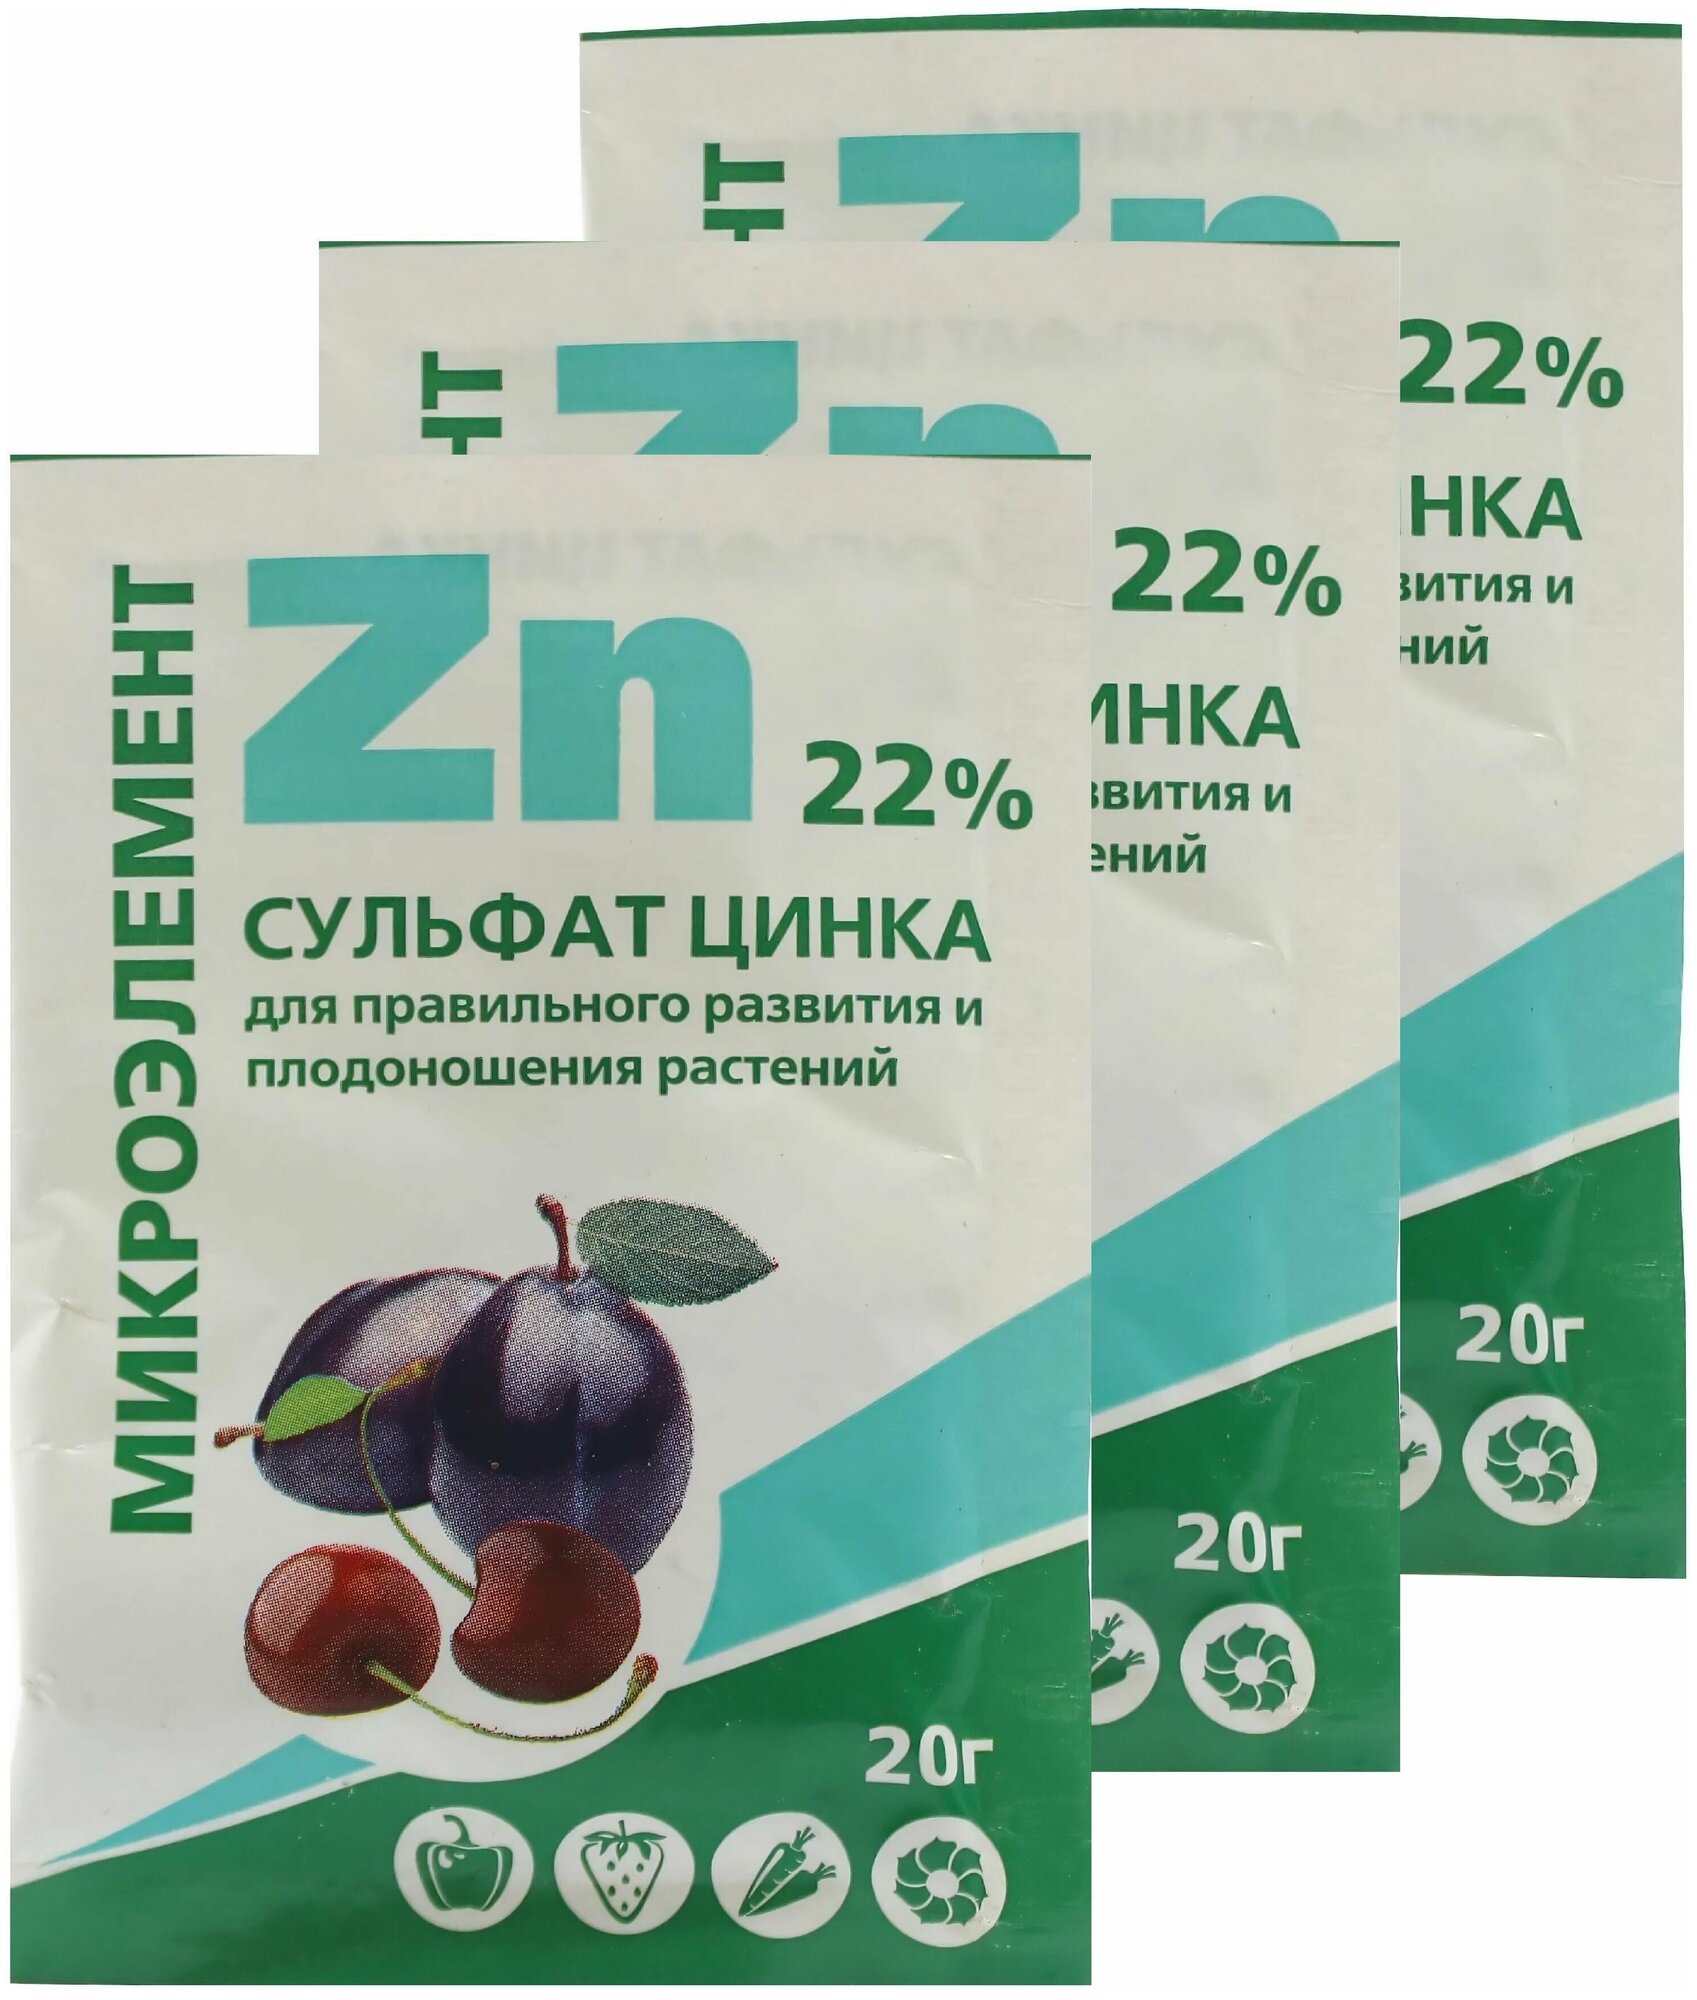 Удобрение "Сульфат цинка 22%" 2 гр (3 шт) - подходит для разных огородных культур капусты кукурузы томатов огурцов. Необходим растениям для роста и